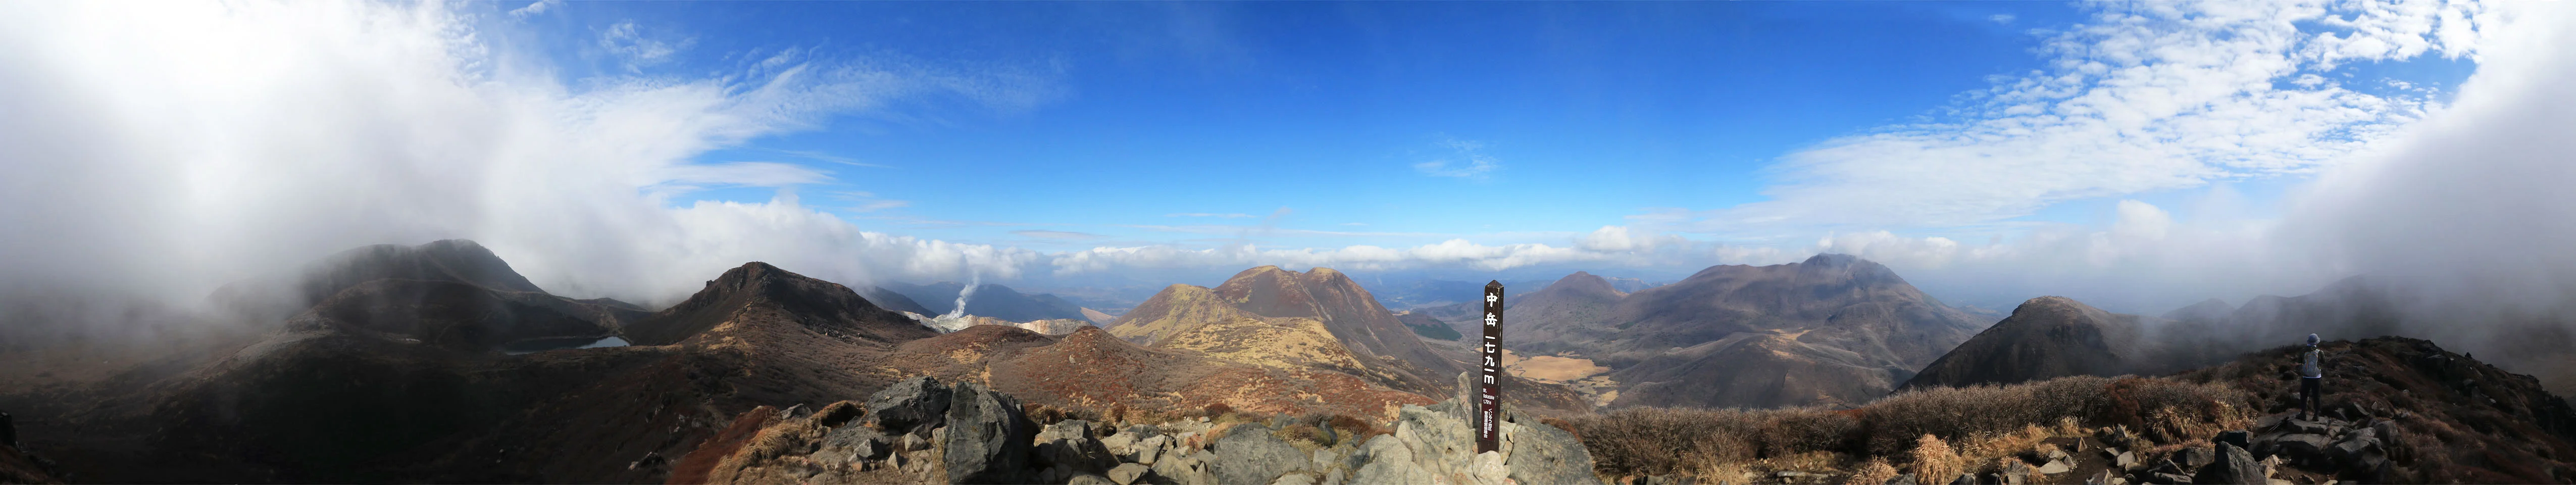 九重山からのパノラマ写真